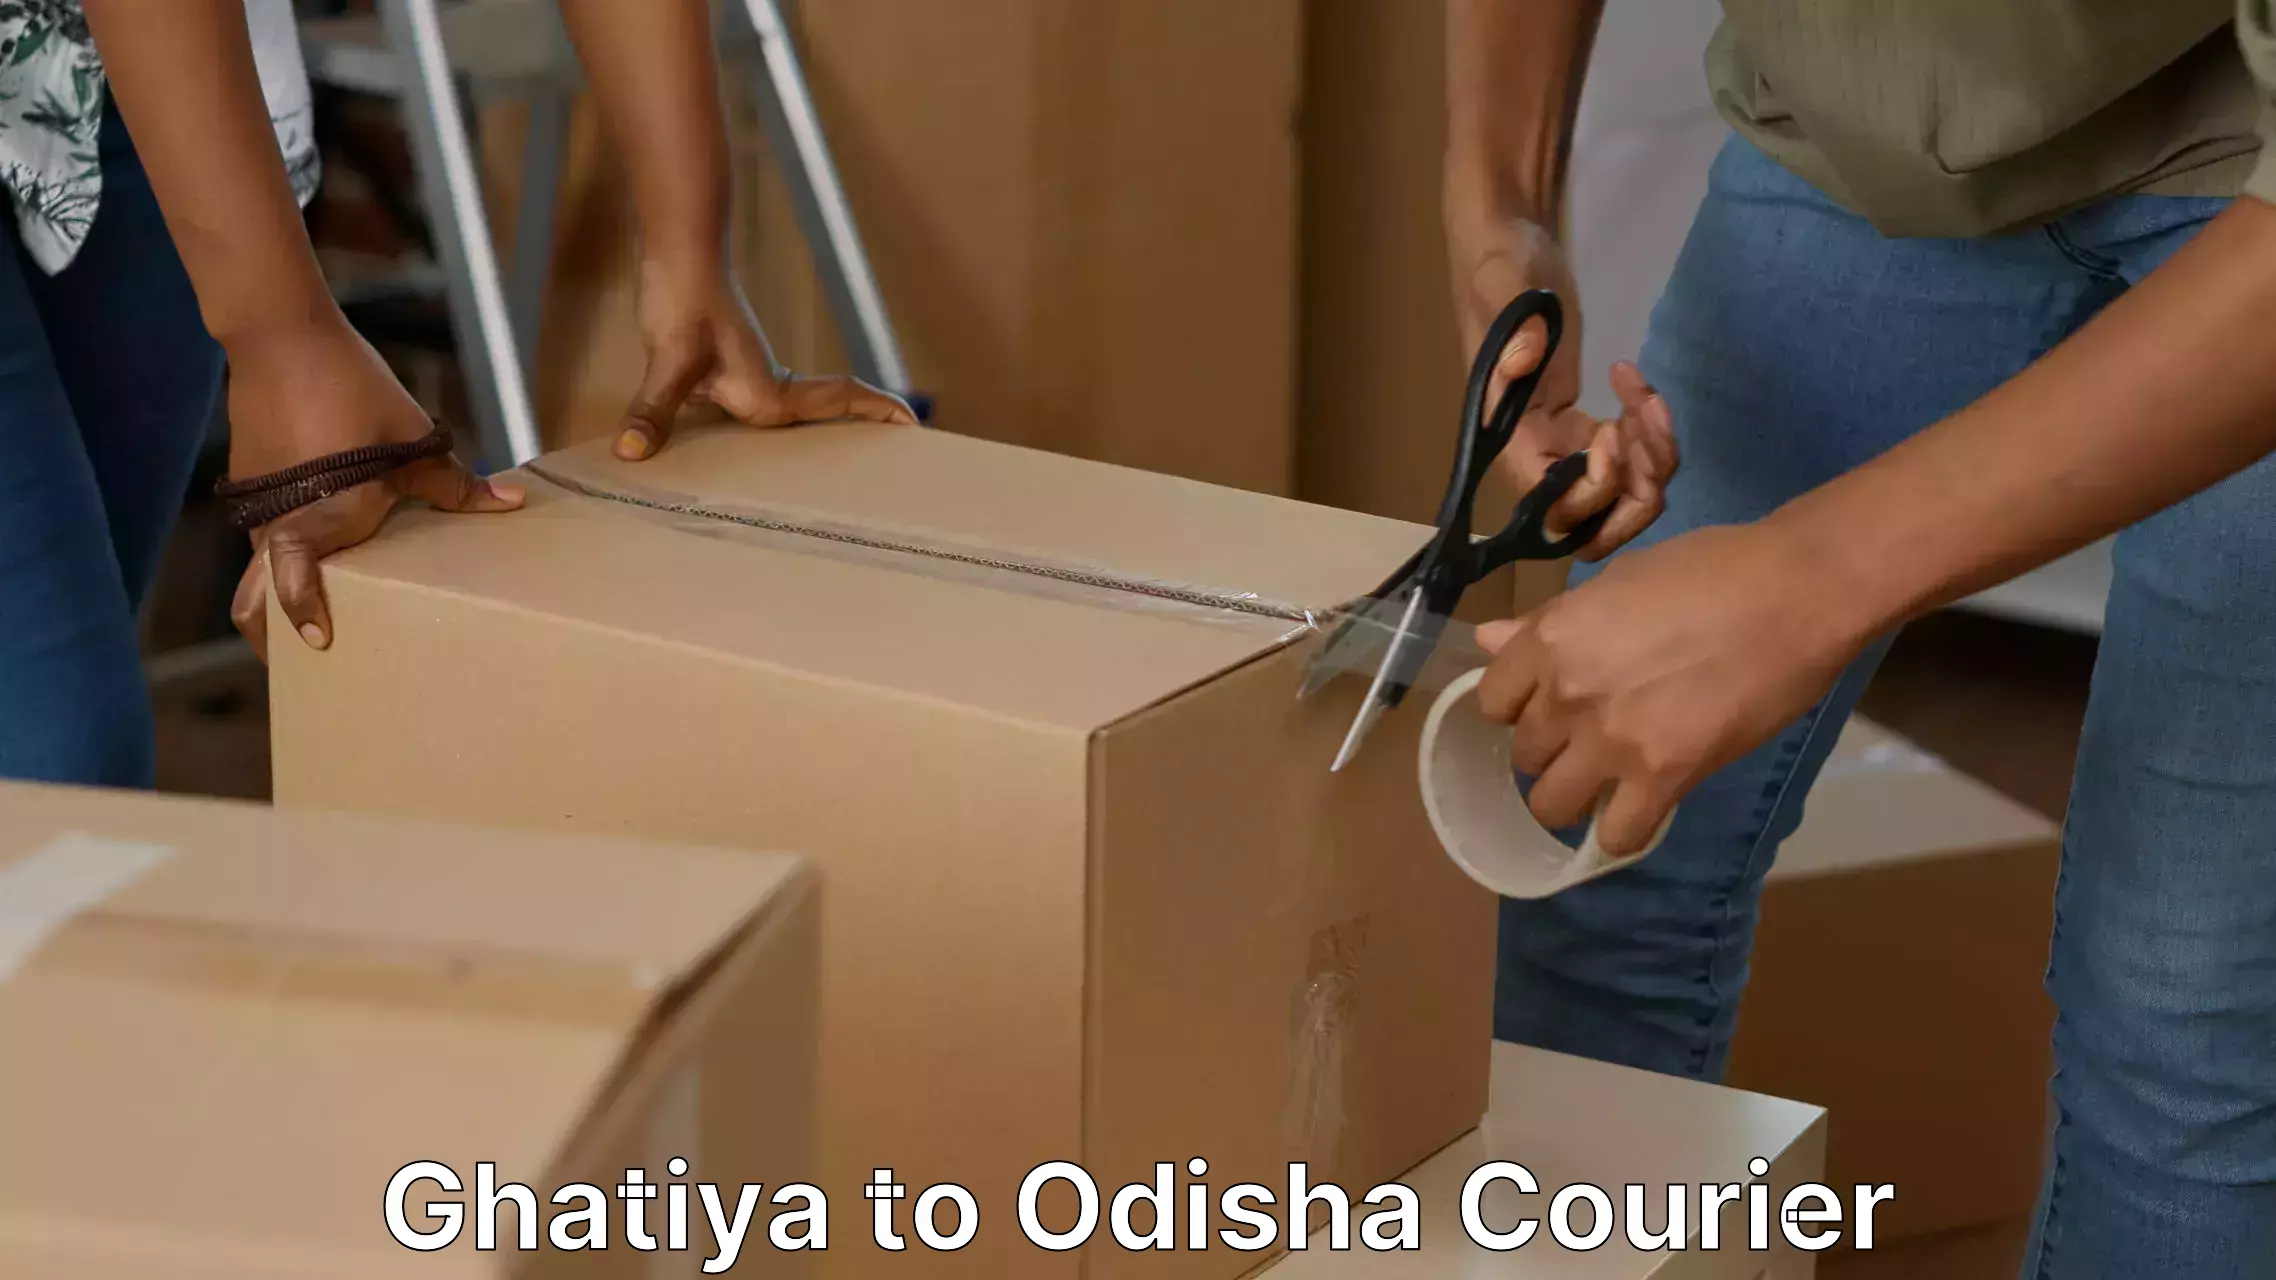 Furniture relocation experts Ghatiya to Odisha